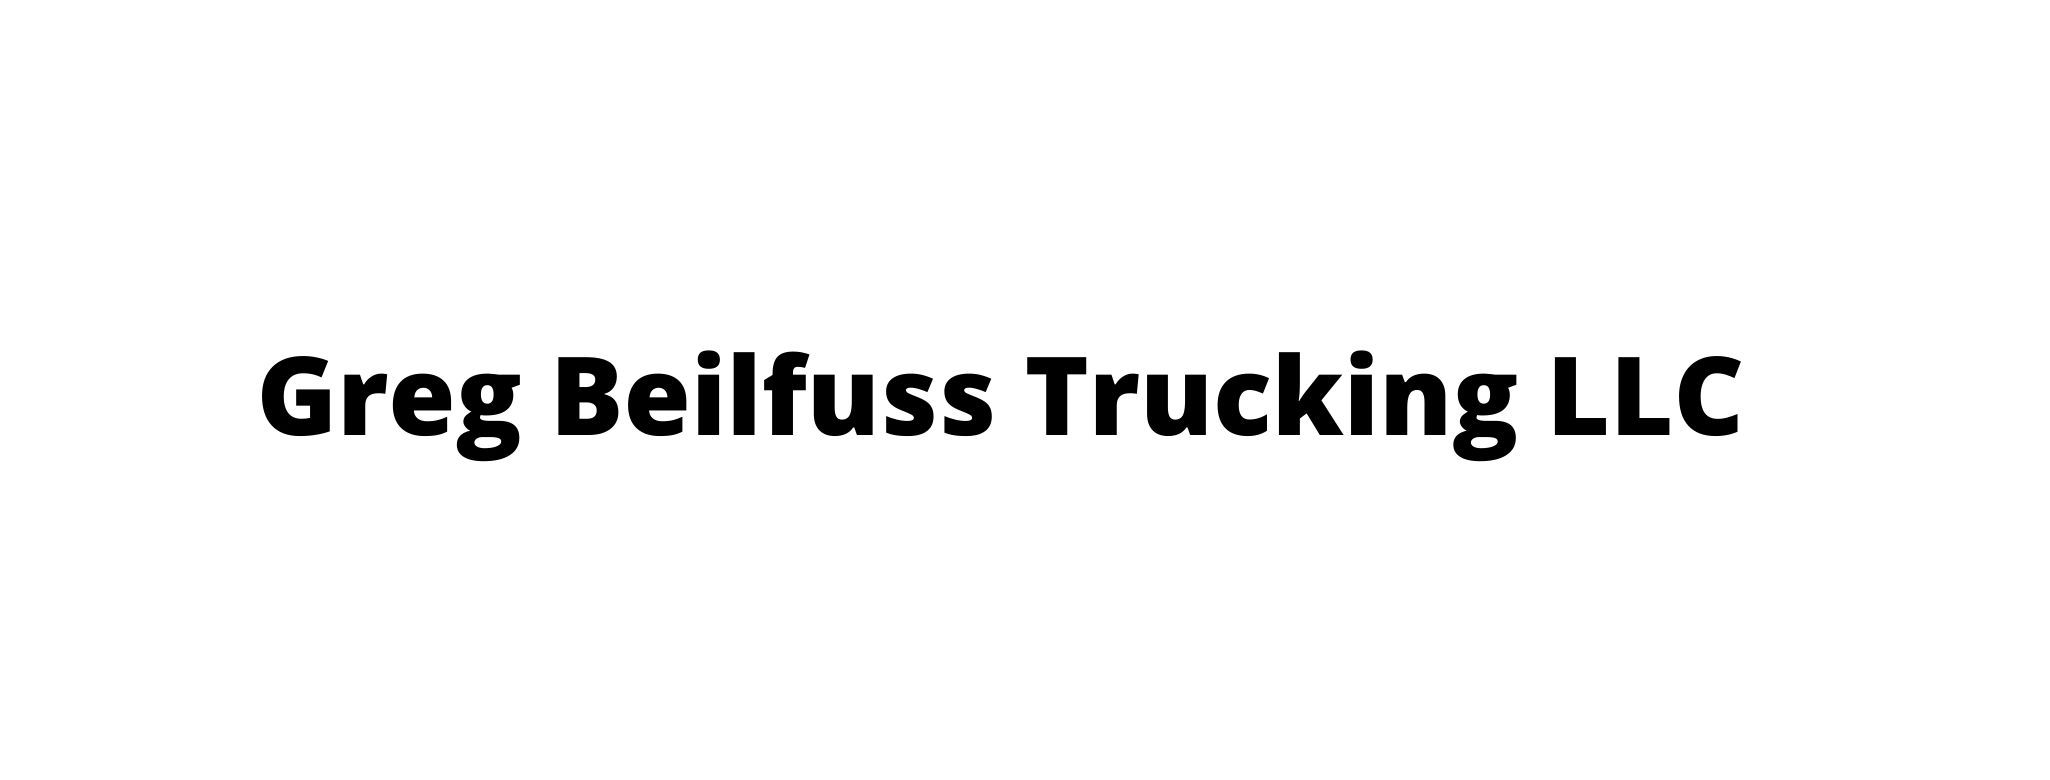  Greg Beilfuss Trucking LLC